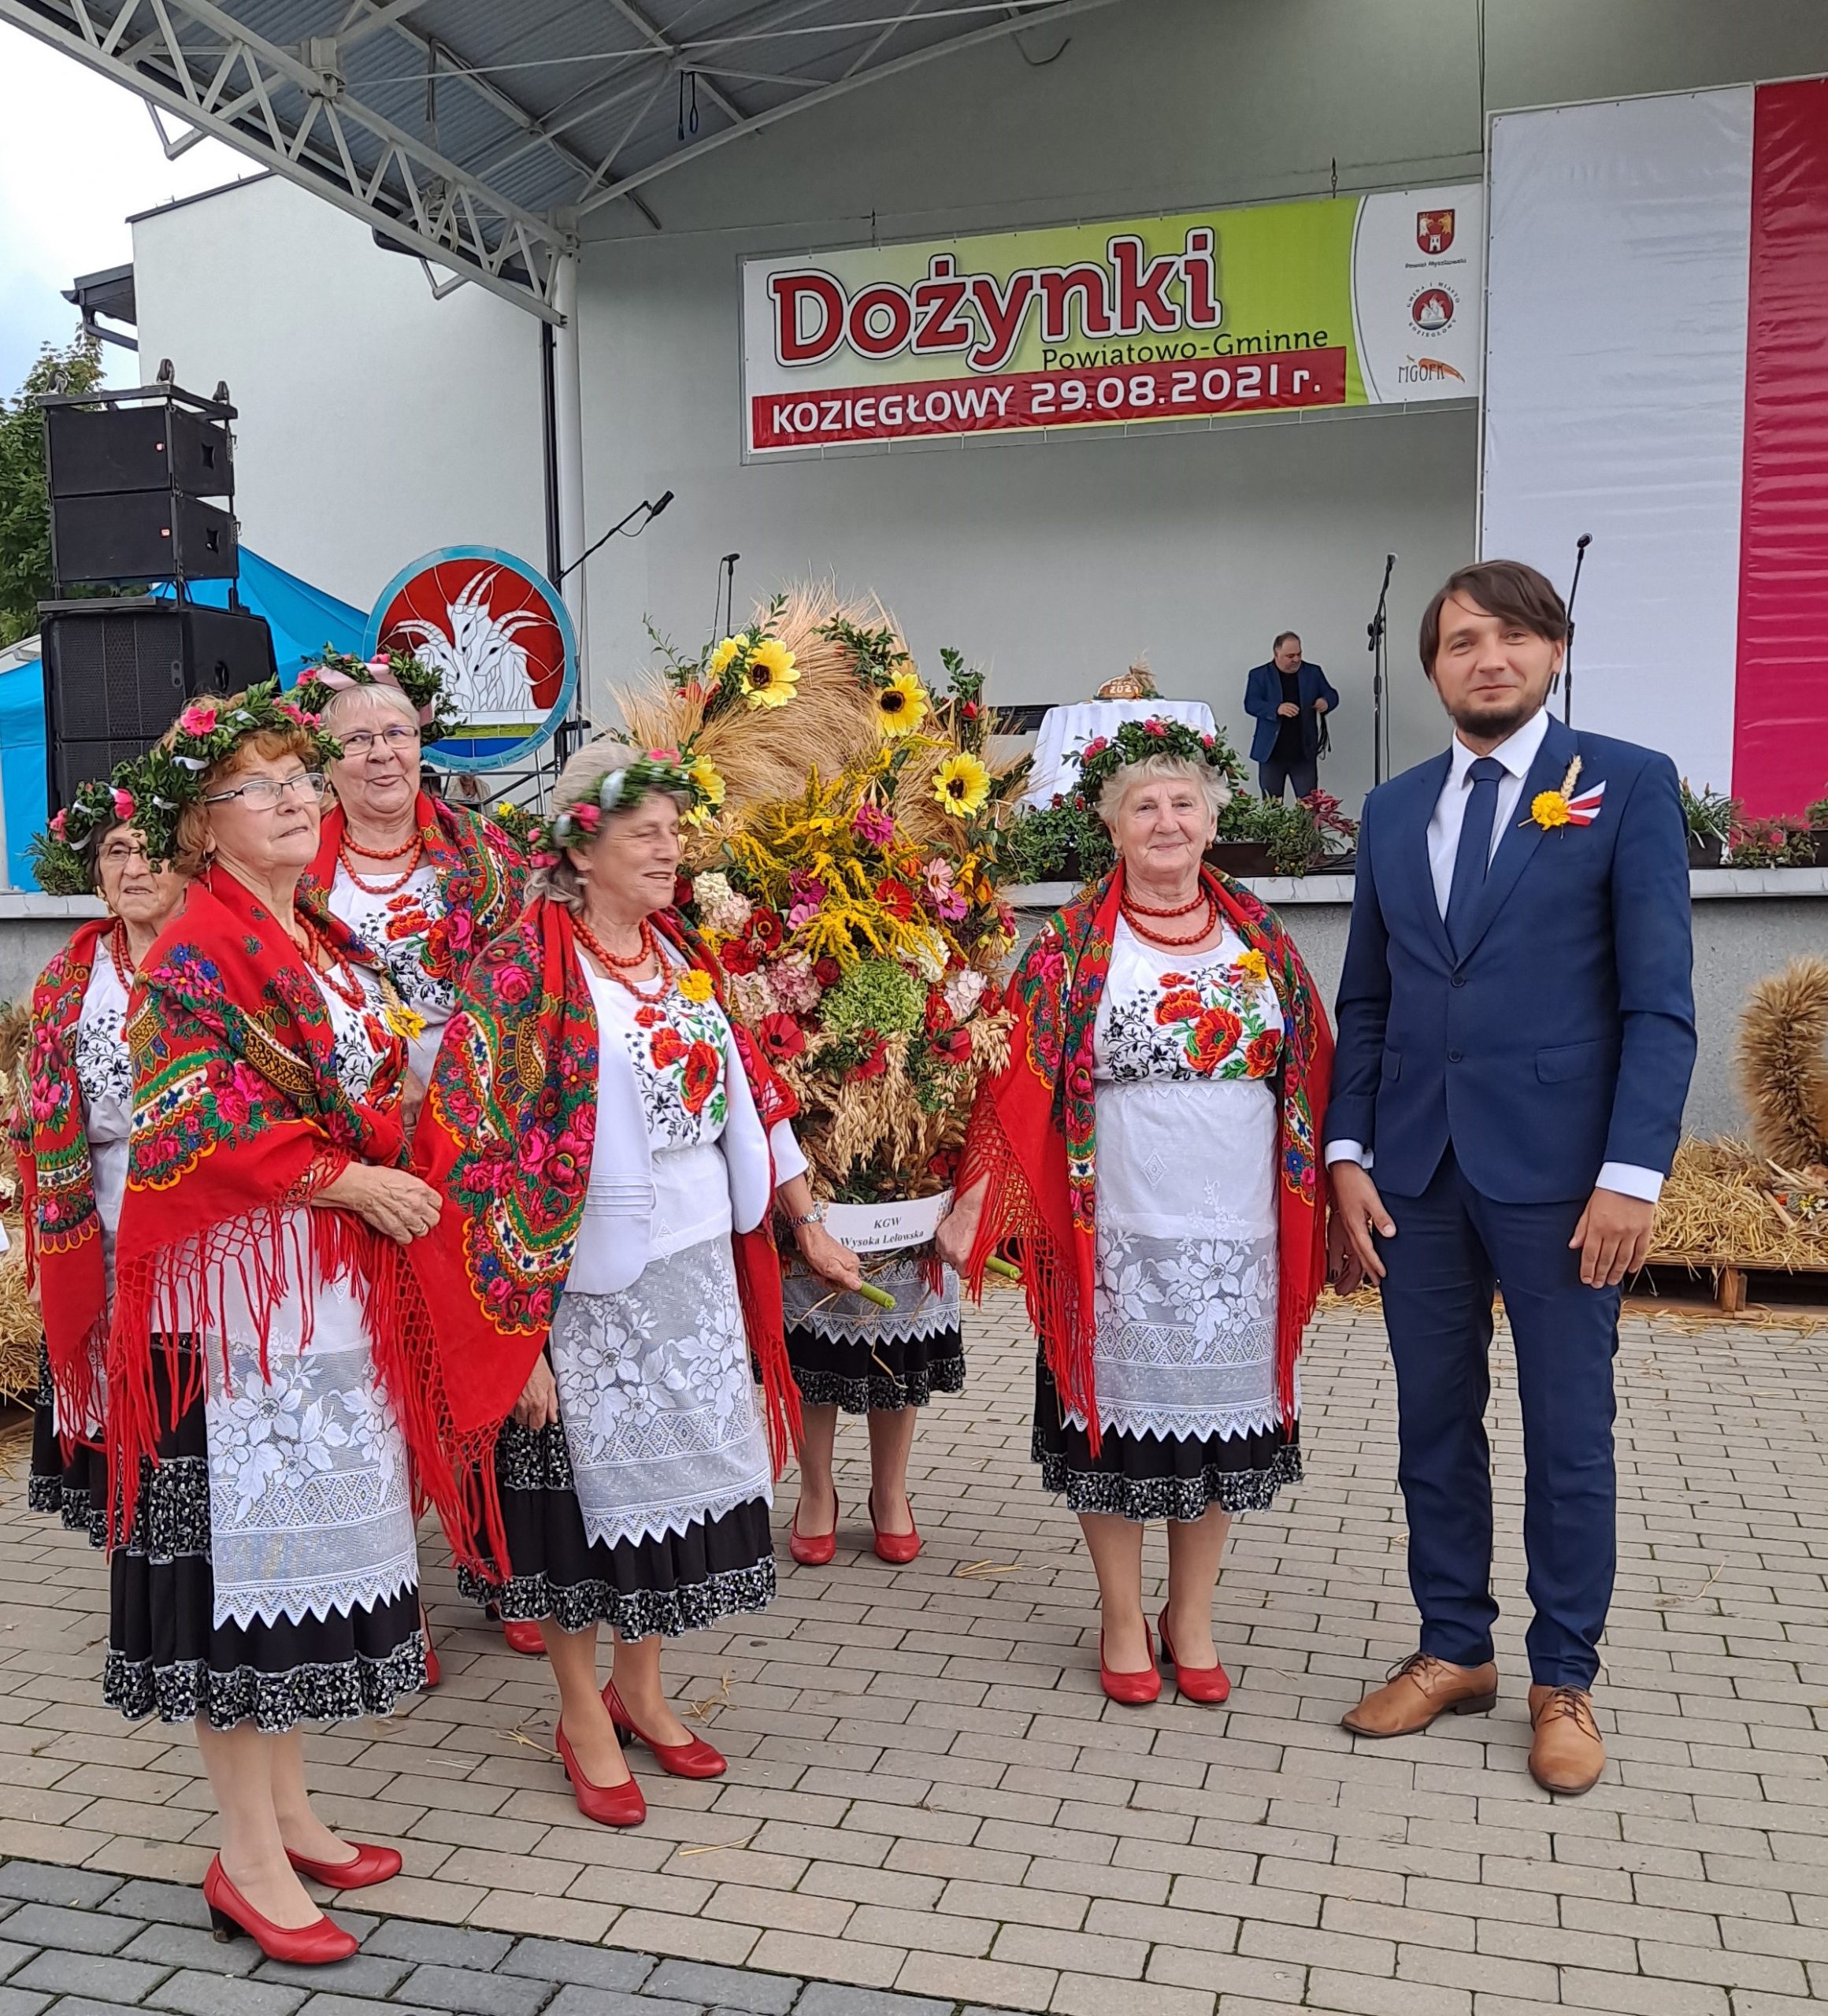 Nagrodzona rolniczka z Suliszowic podczas Powiatowych Dożynek w Koziegłowach 1